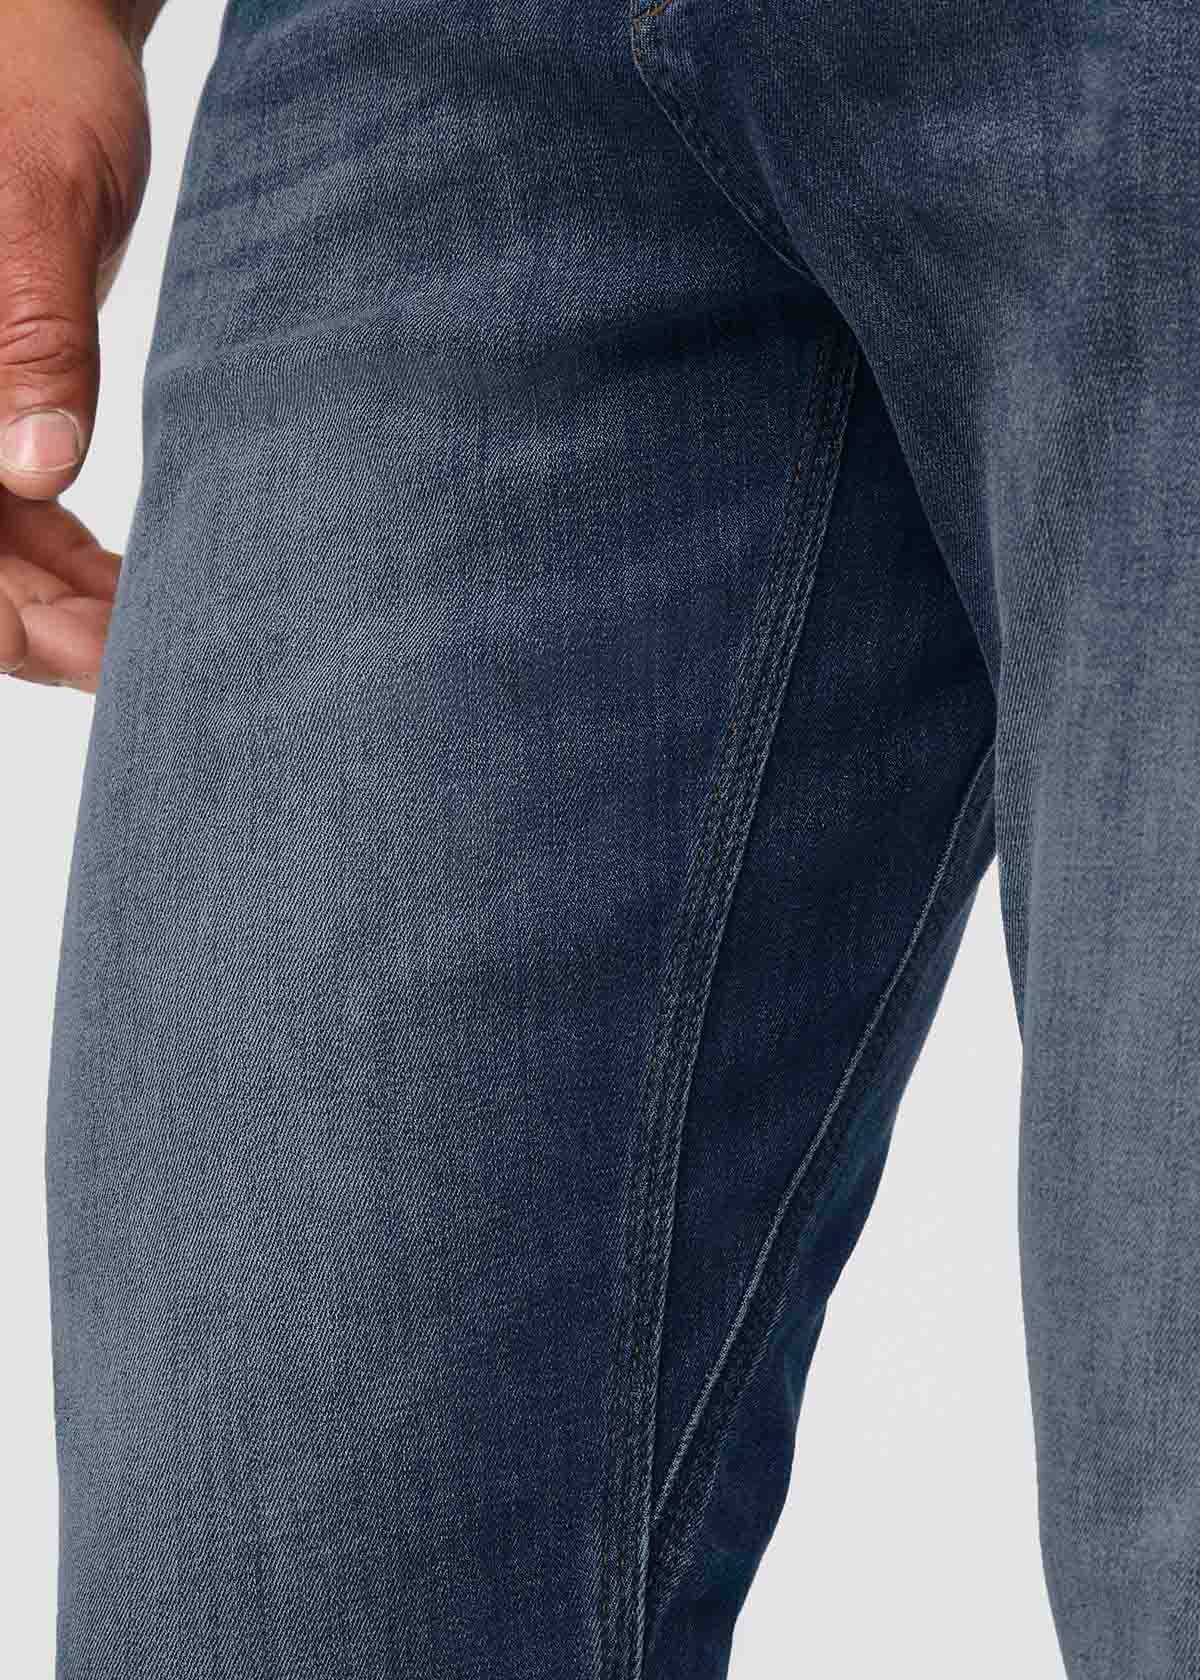 Men's Medium Wash Jeans